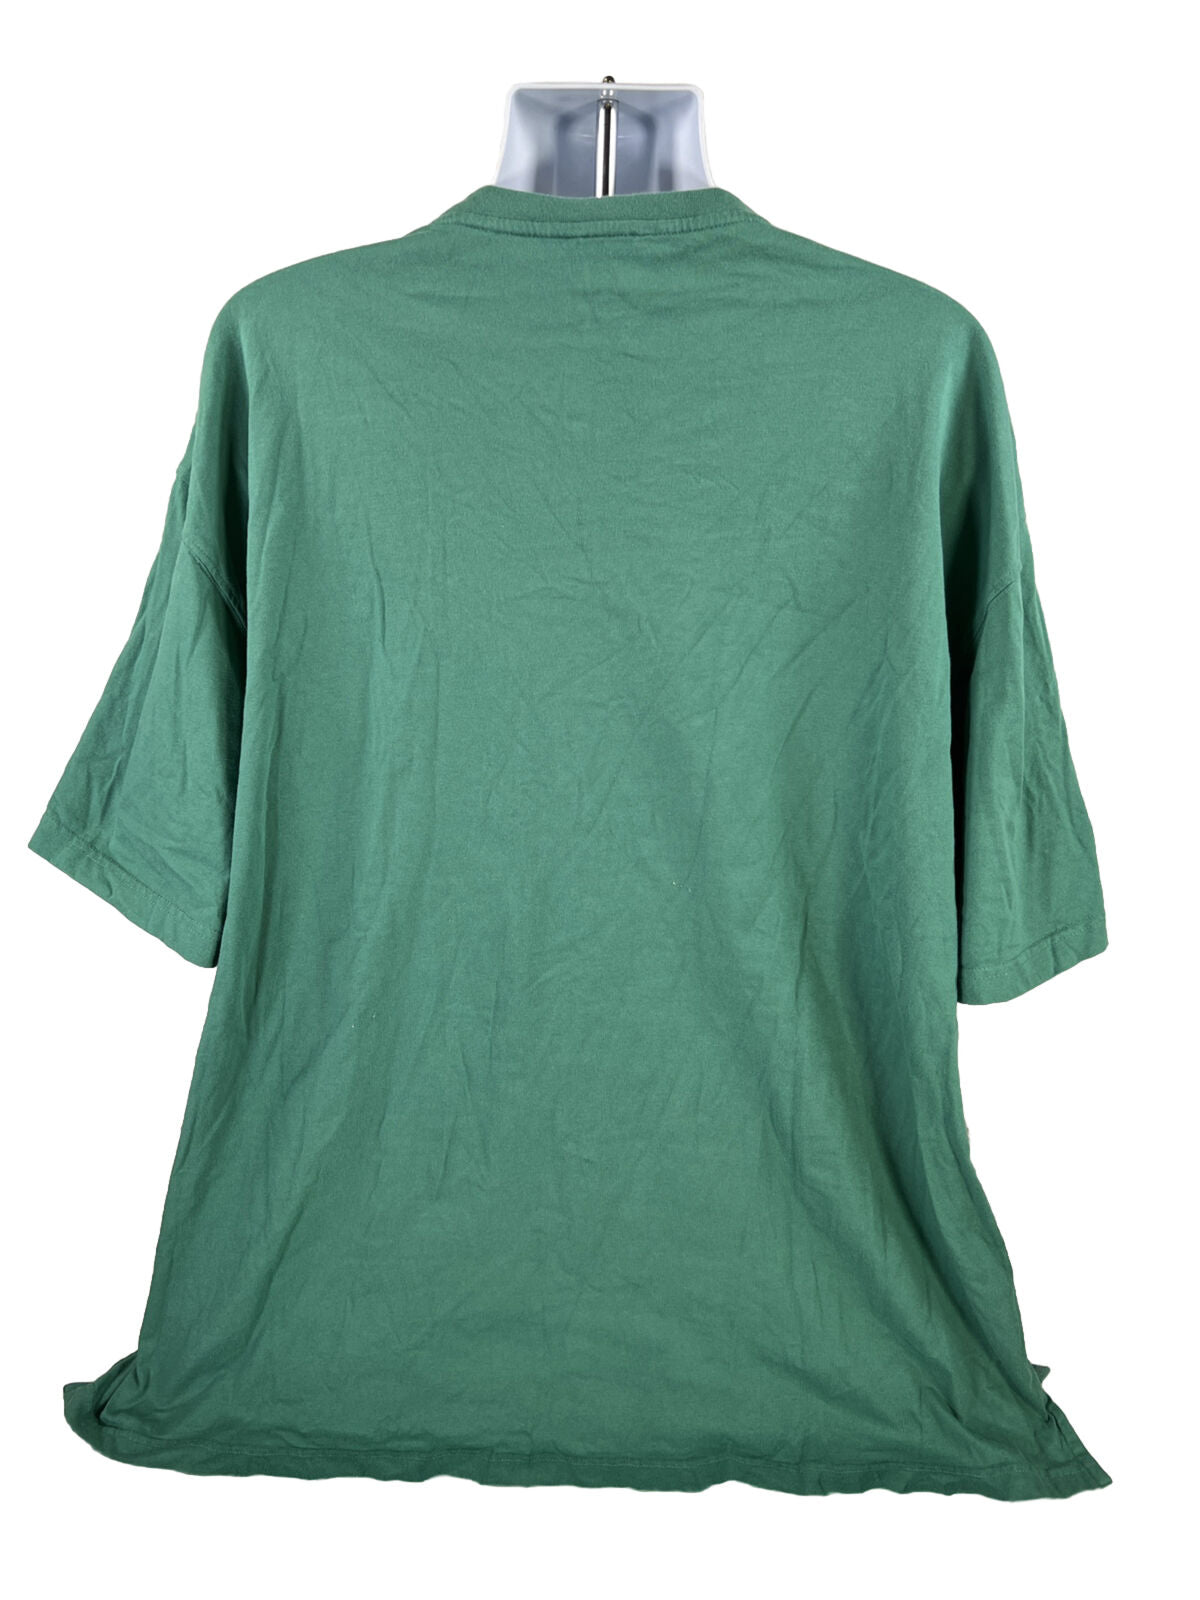 Camiseta verde de manga corta con botones delanteros de Red Head para hombre - 3XL